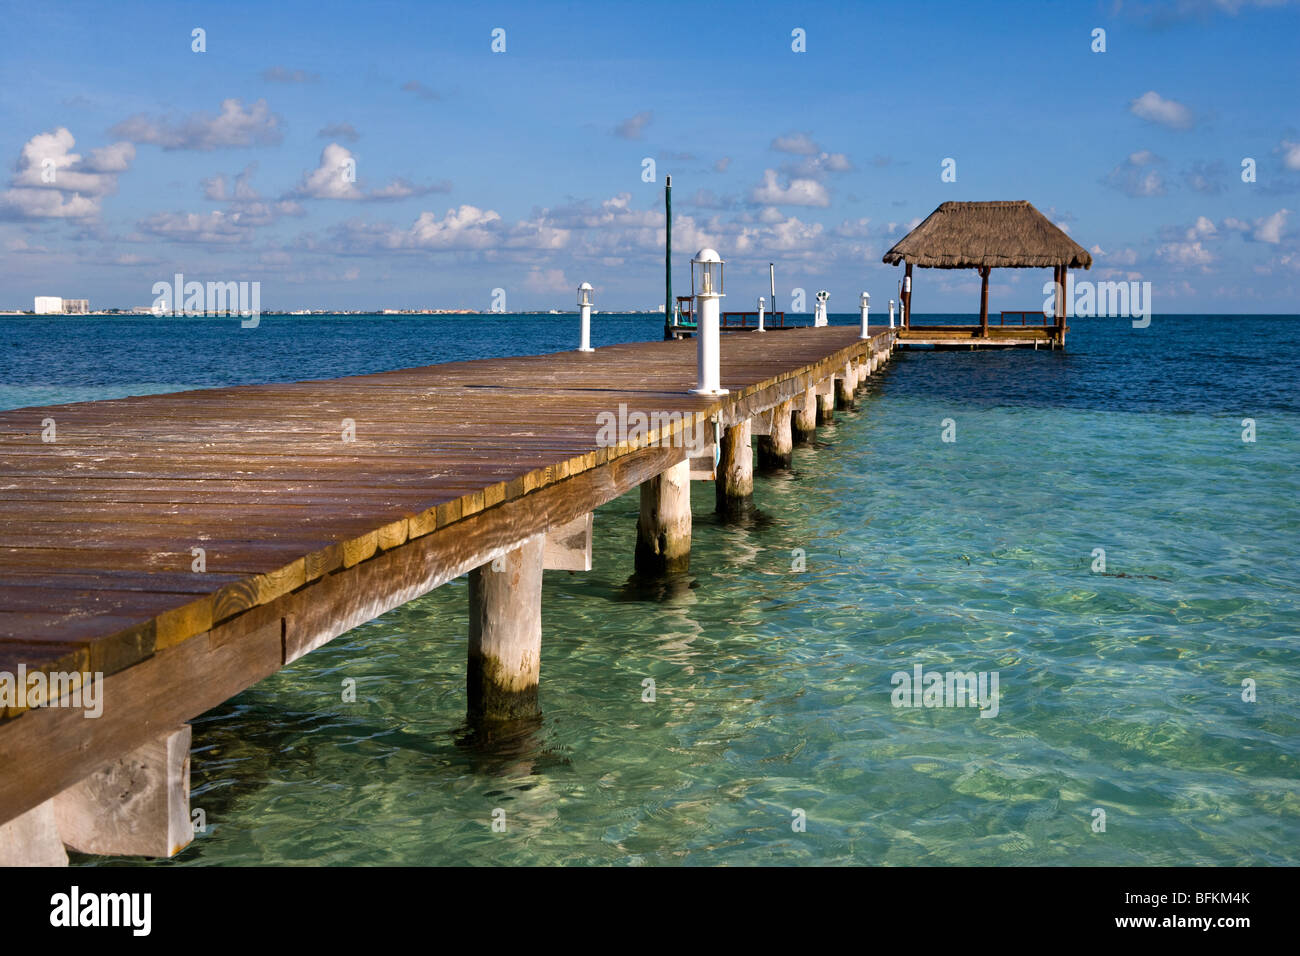 Ein Dock im ruhigen Wasser bei Club de internationale Cancun, Mexiko Stockfoto